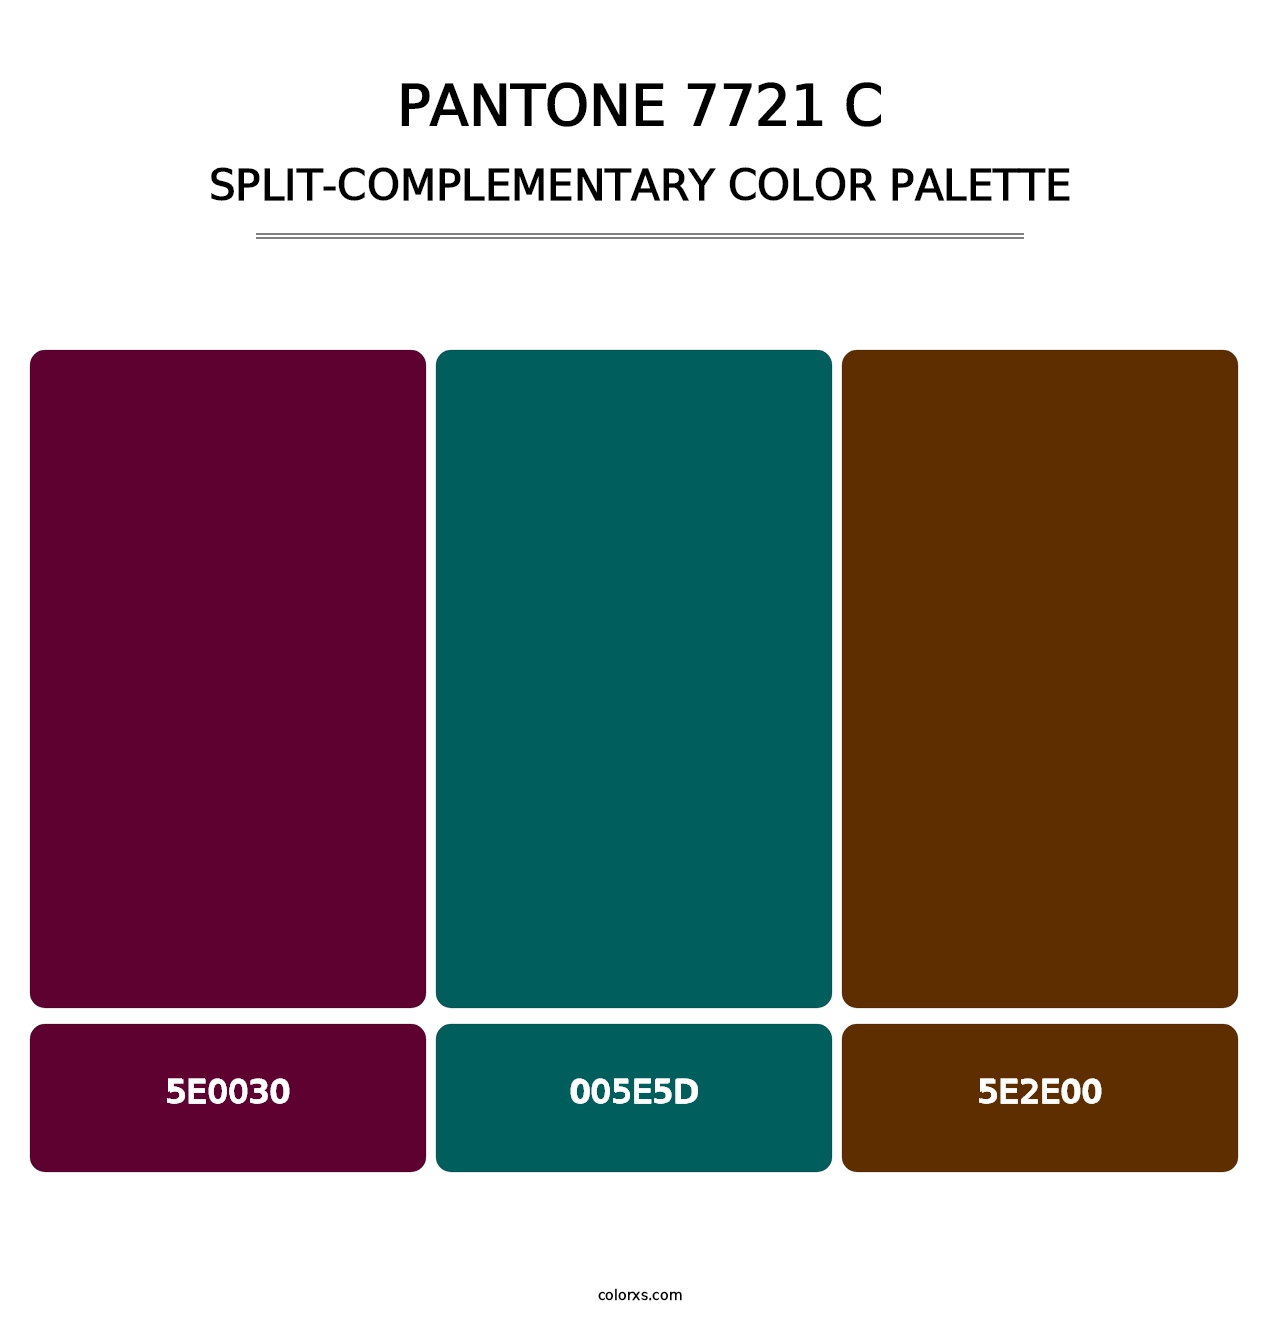 PANTONE 7721 C - Split-Complementary Color Palette